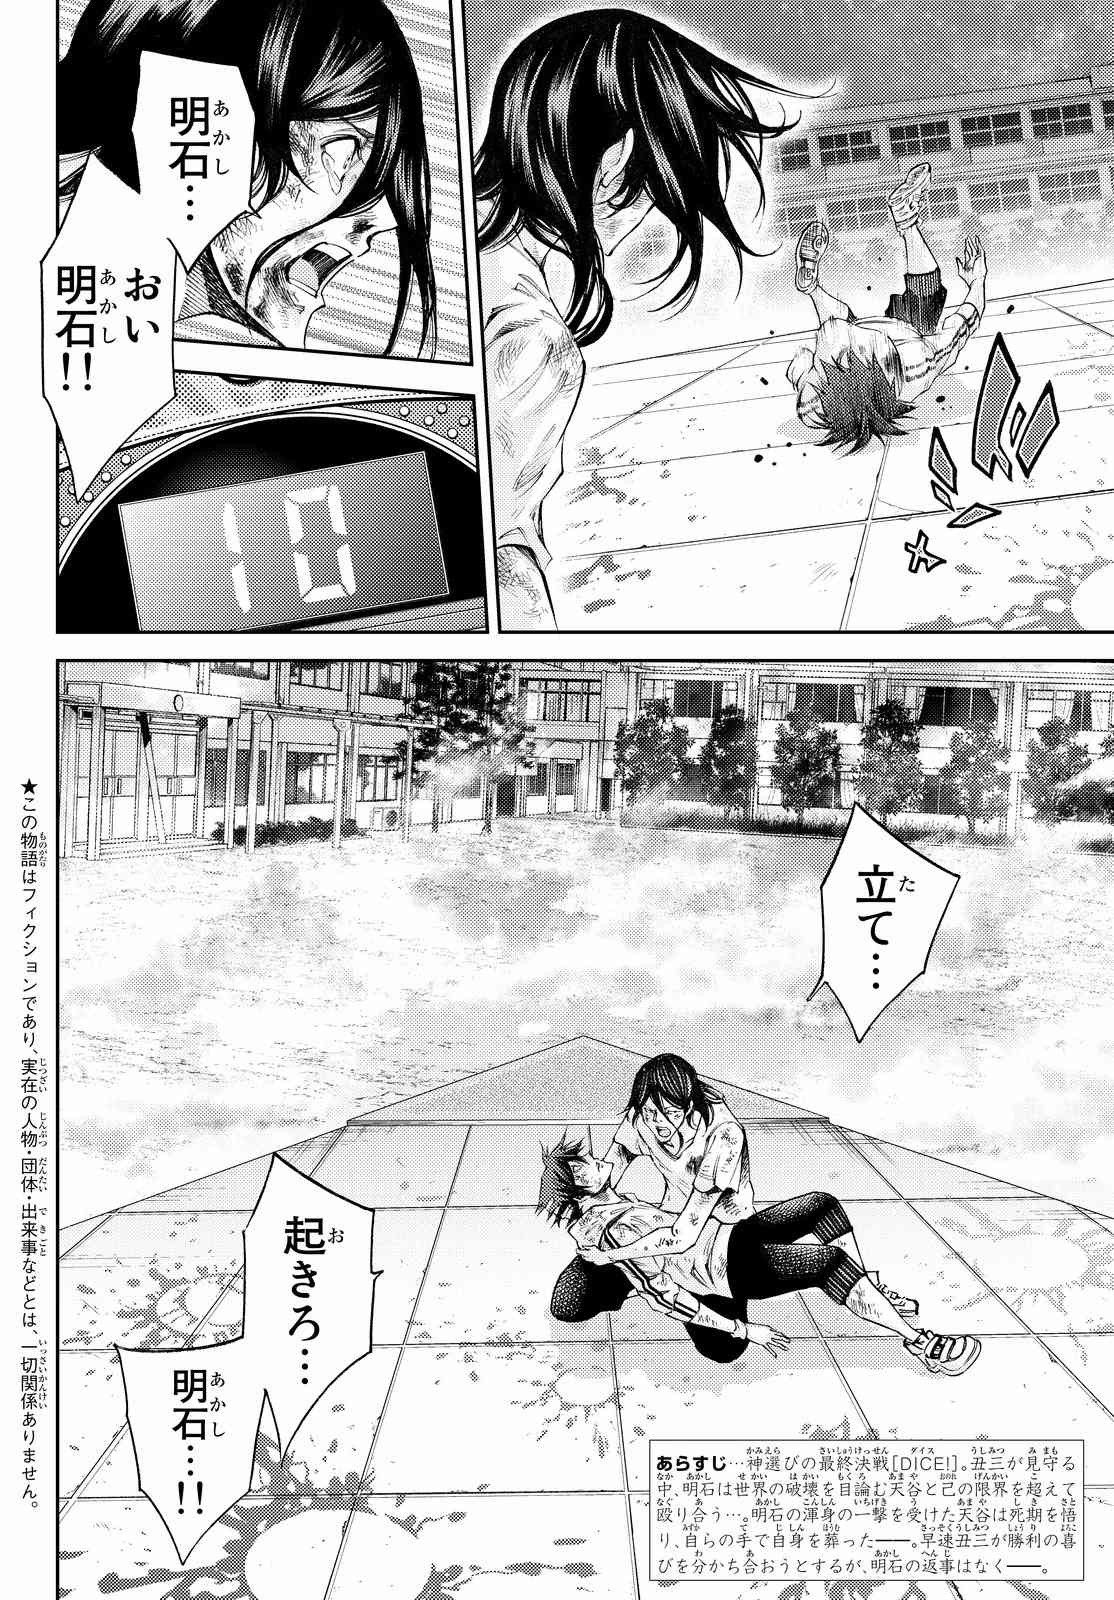 Kamisama no Ituori - Chapter Final - Page 2